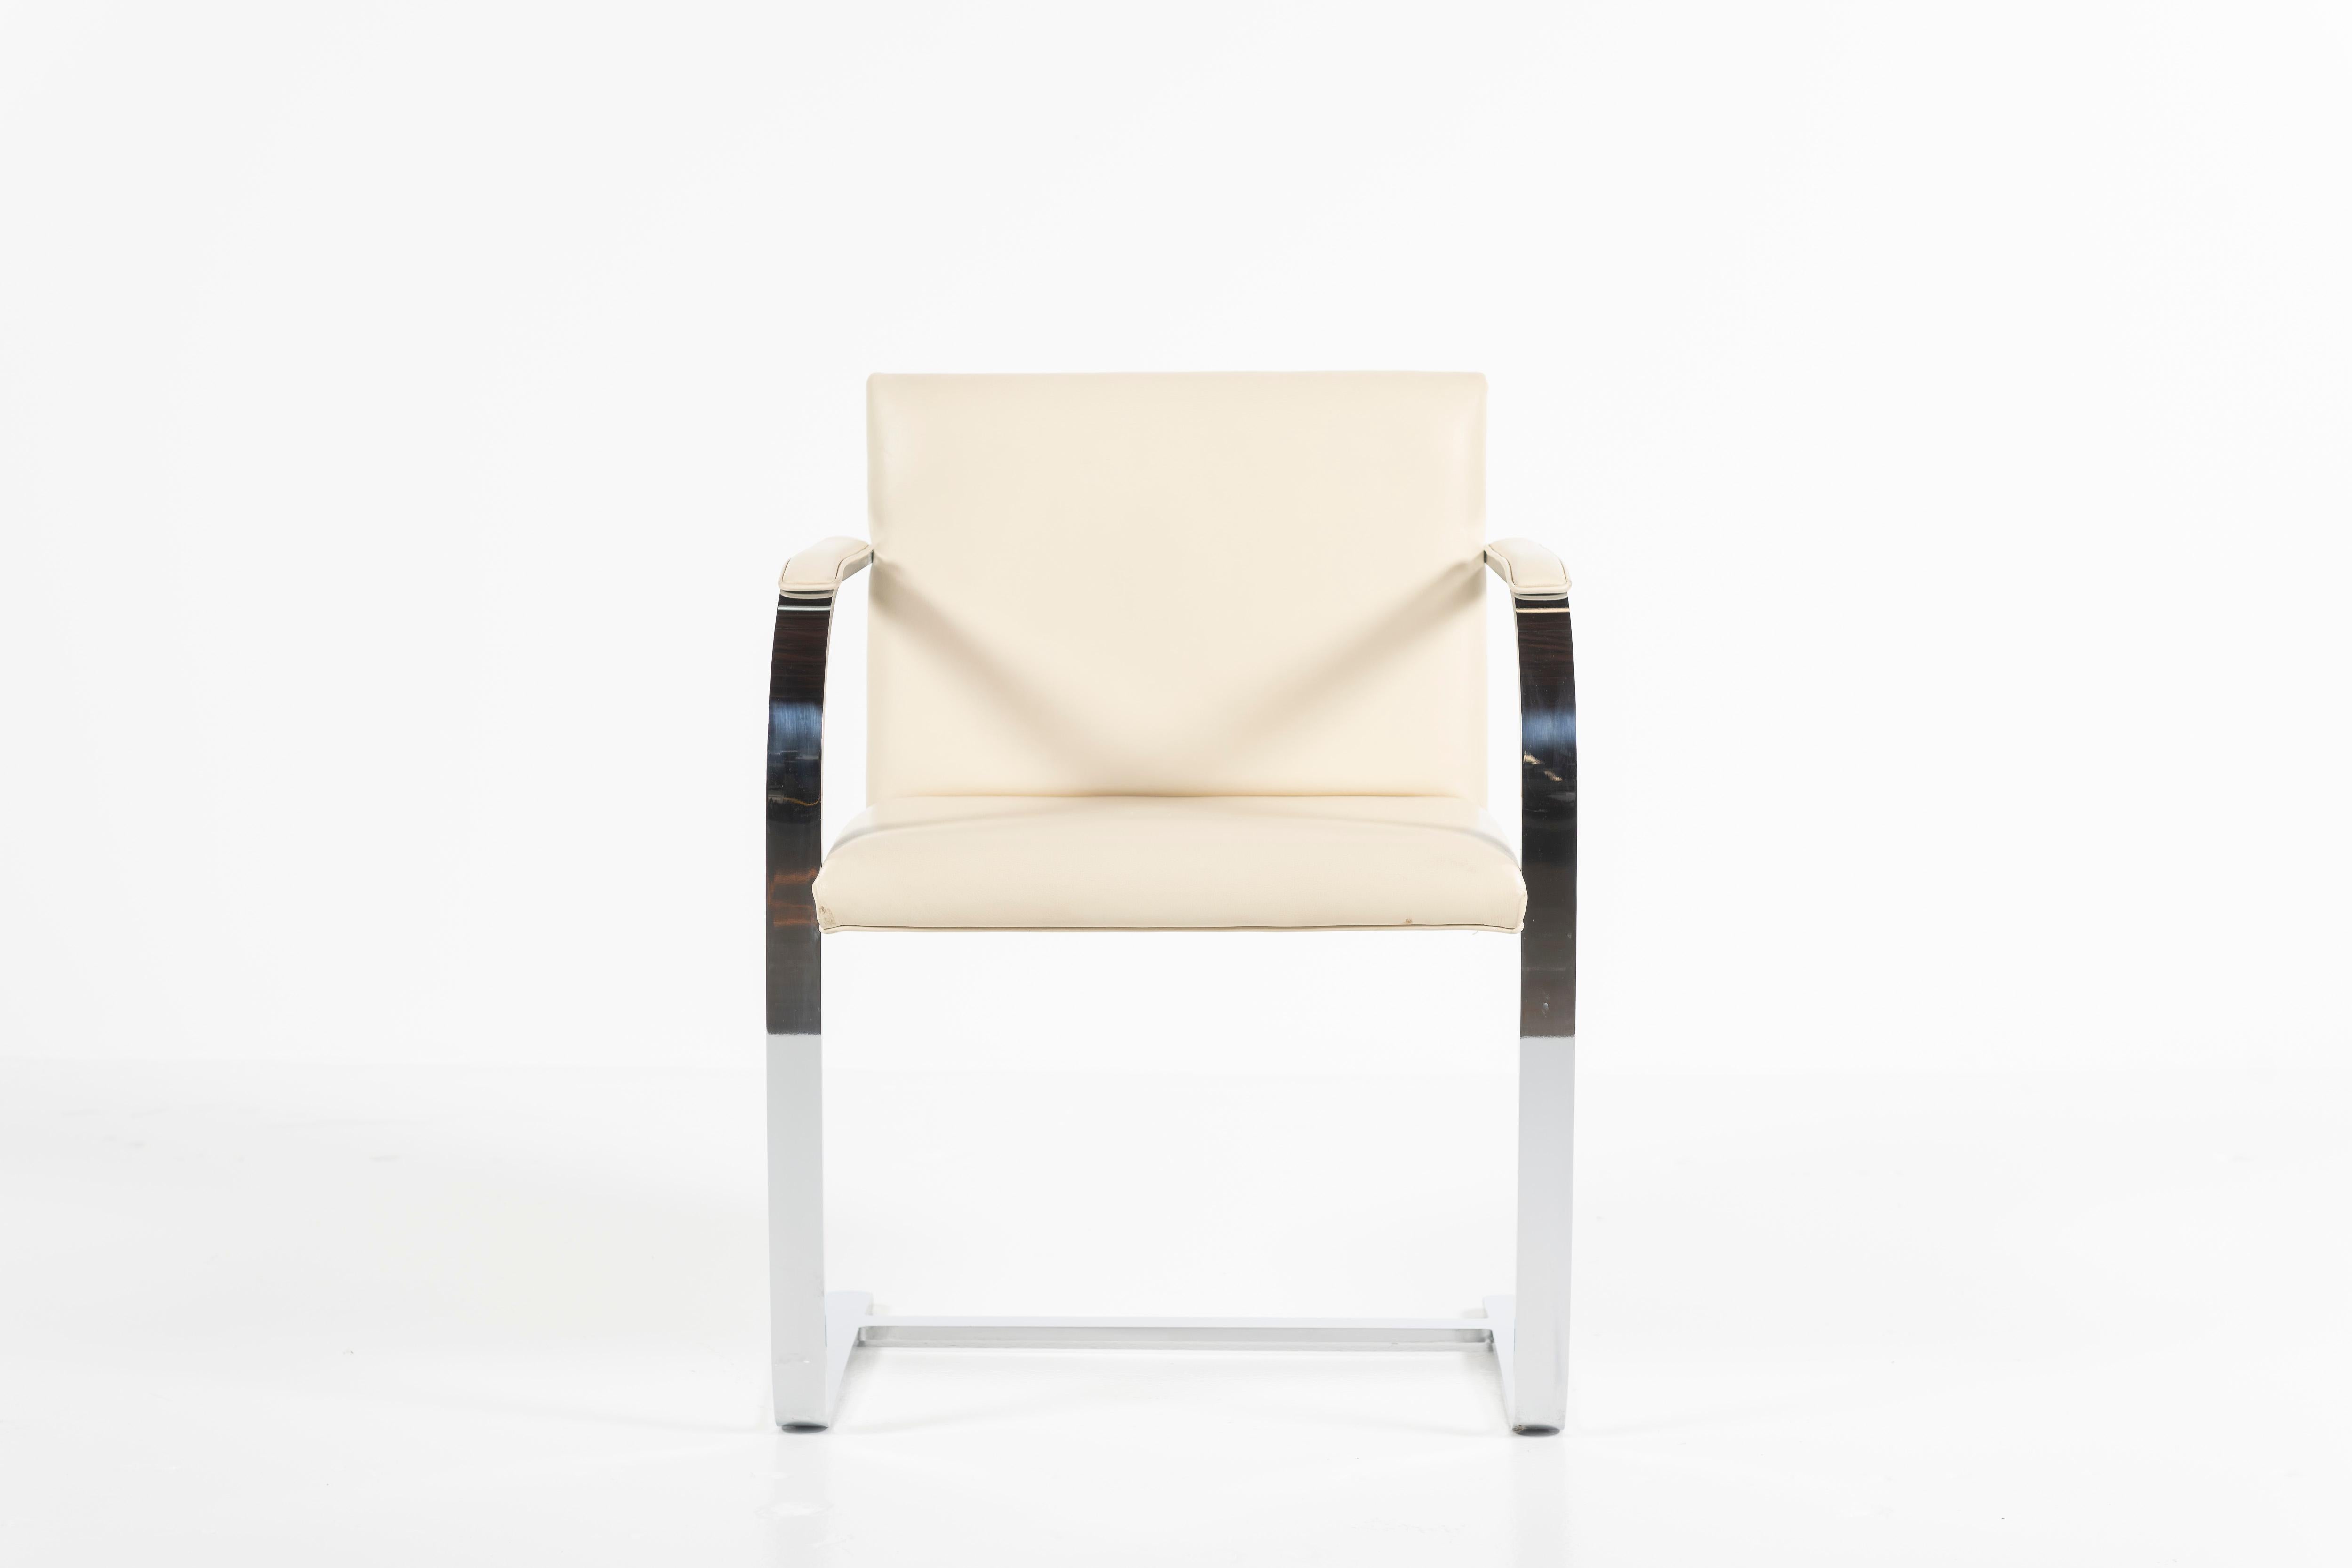 Classique moderne et intemporel, cette chaise présente un sens parfait des proportions, ainsi qu'une forme minimaliste et des détails d'un raffinement exquis. Le piètement en porte-à-faux et les accoudoirs paddés soutiennent l'assise ample. En